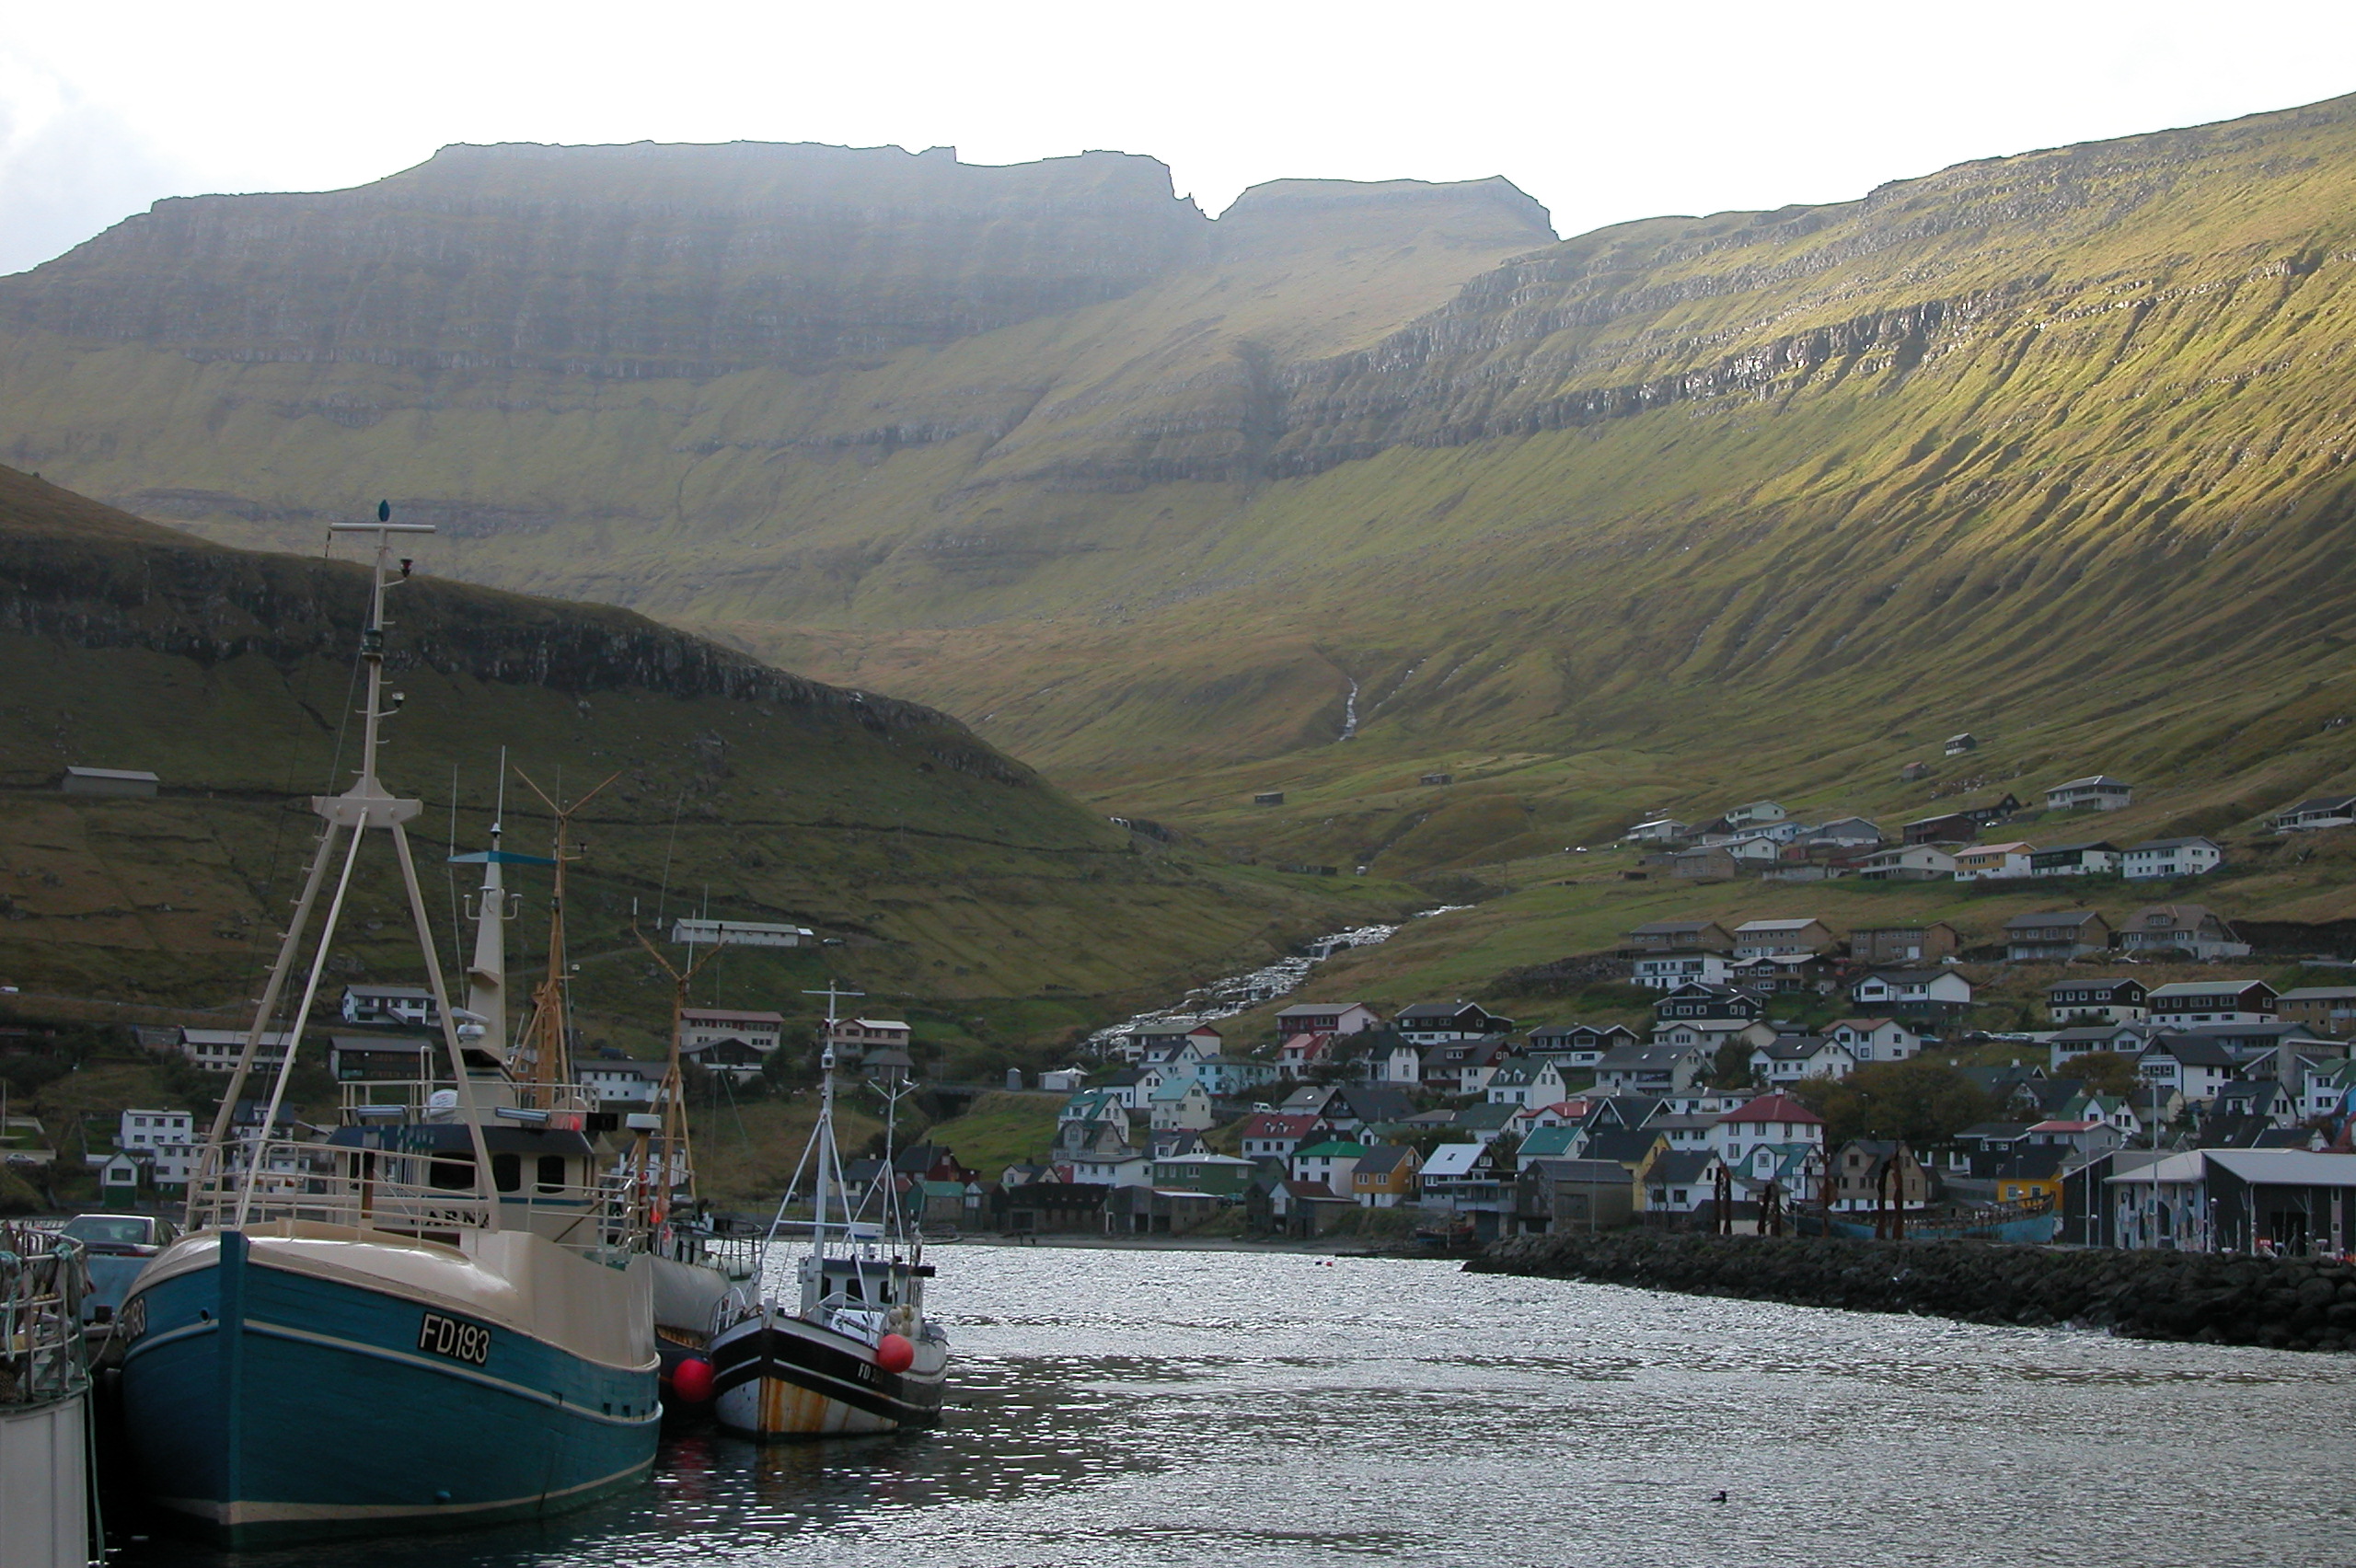 Fuglafjordur harbour, Faroe Islands